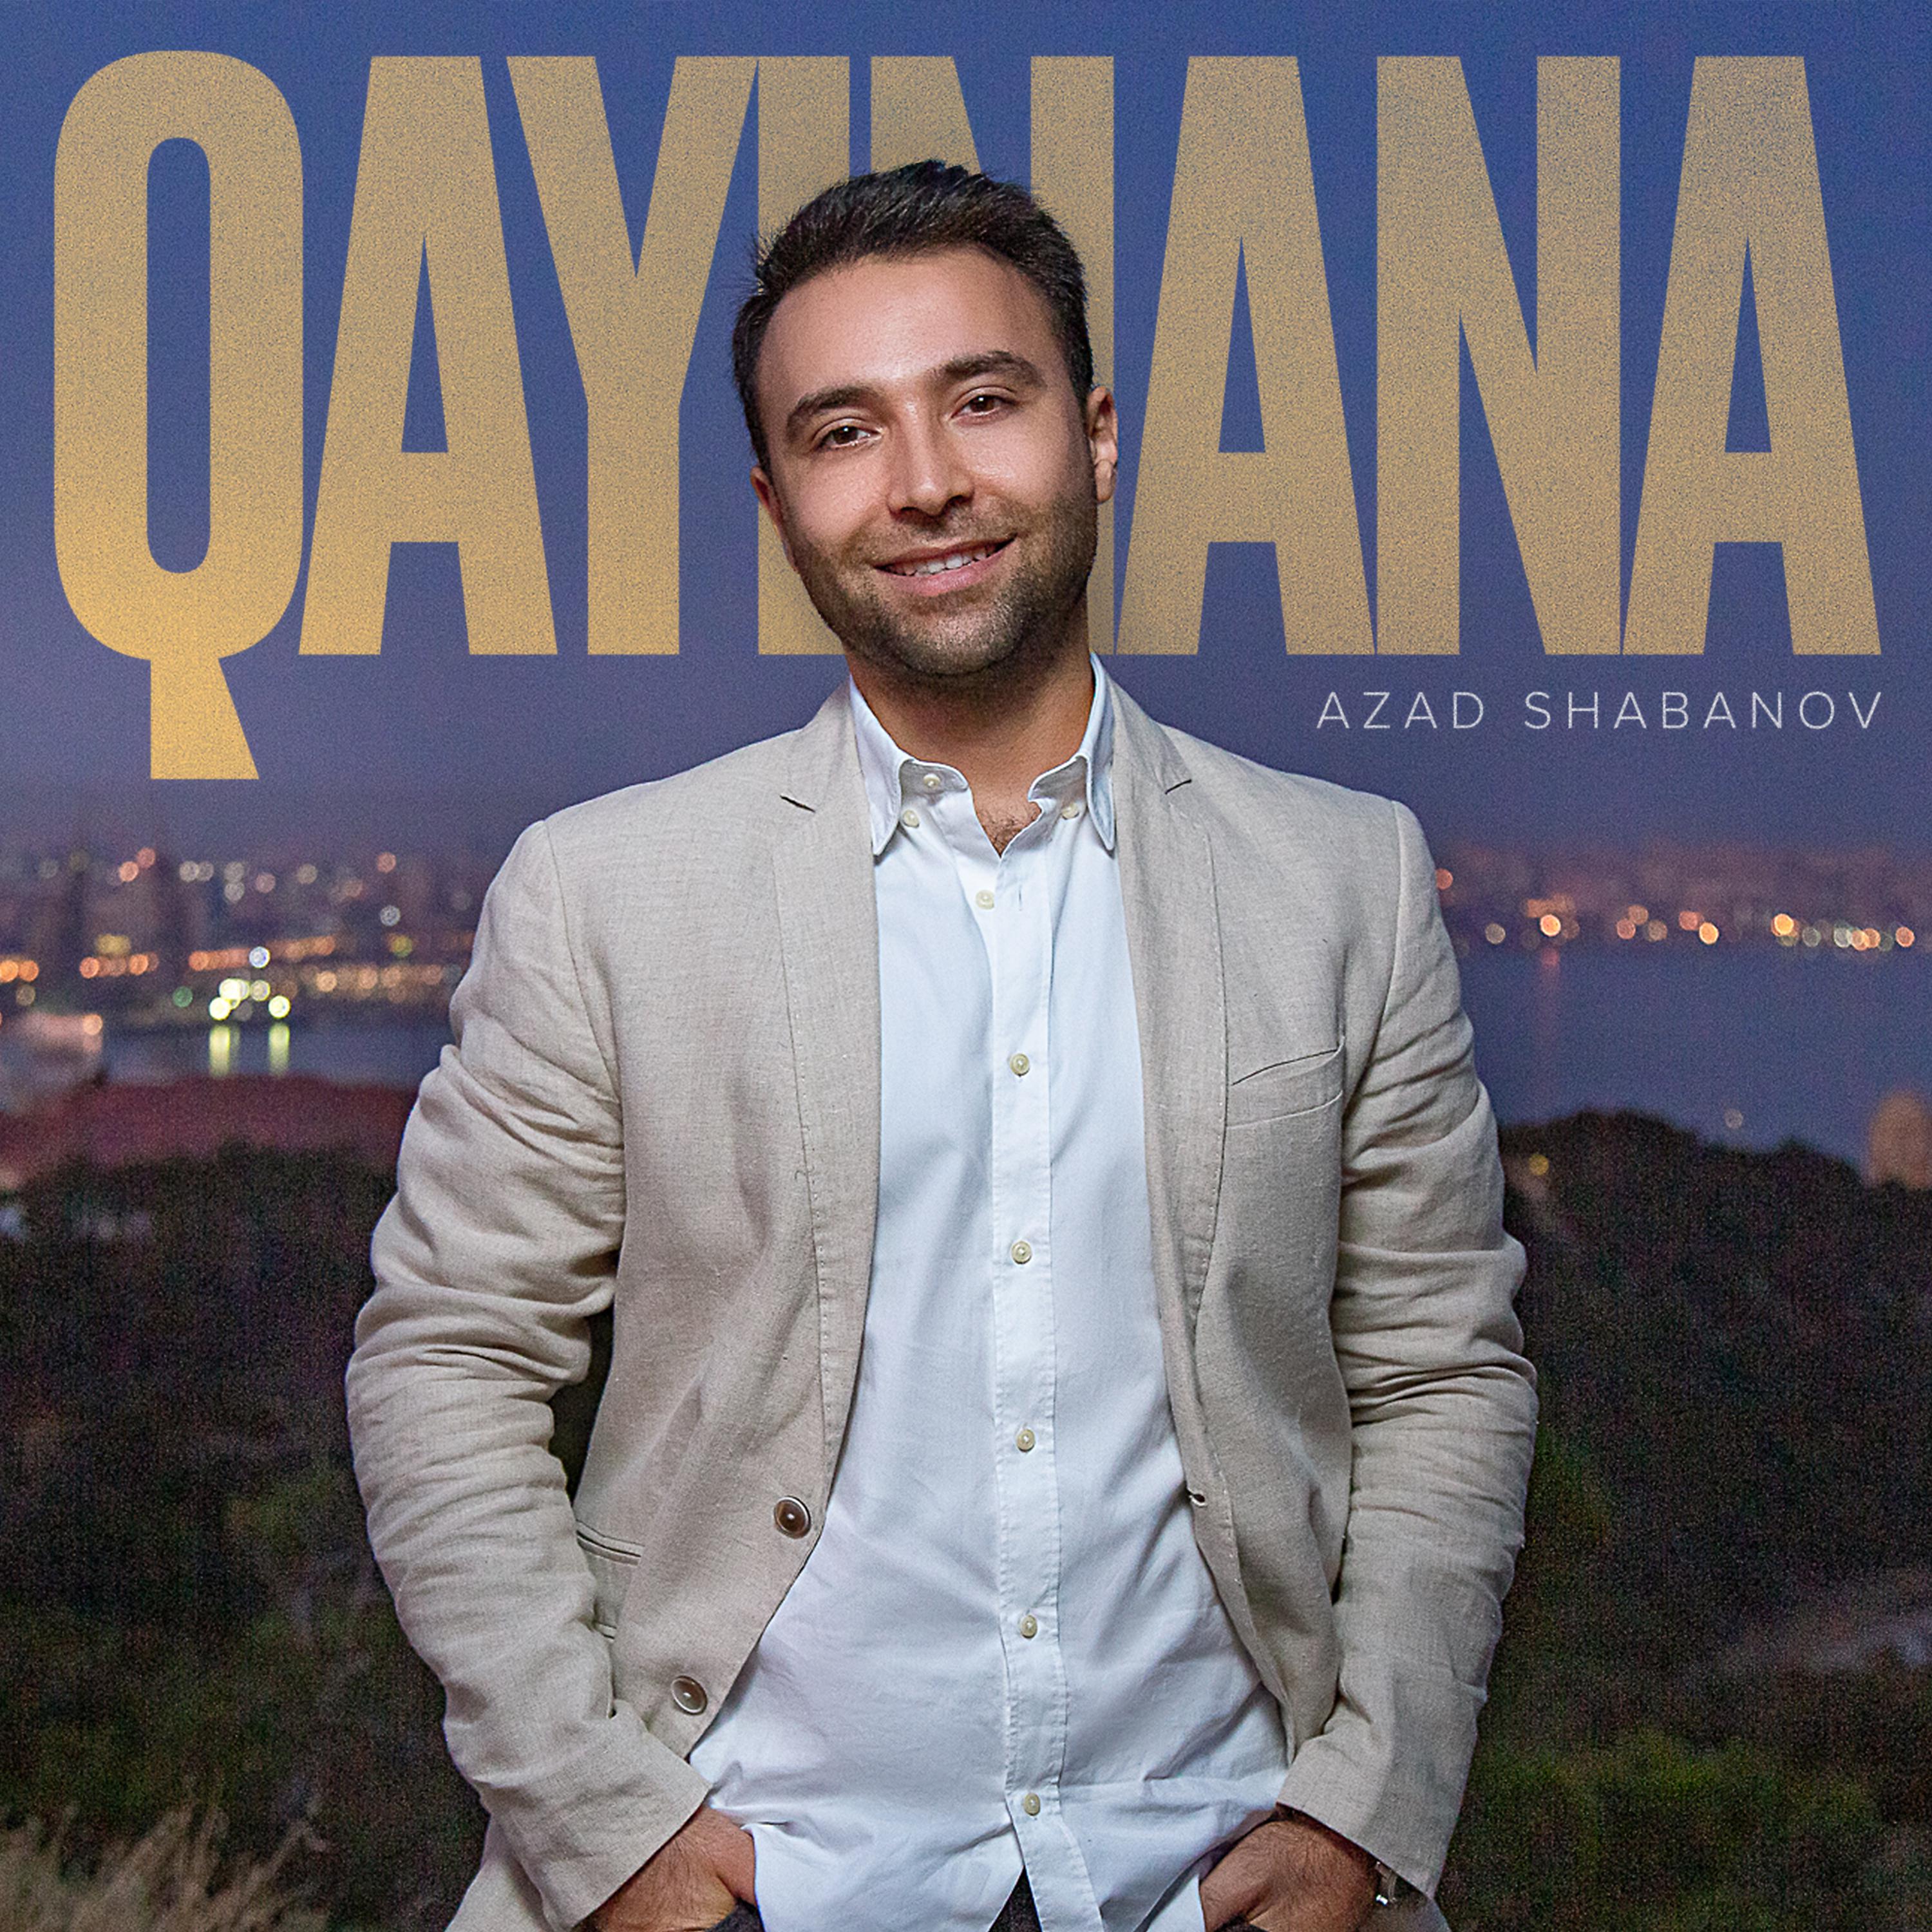 Постер альбома Qayınana